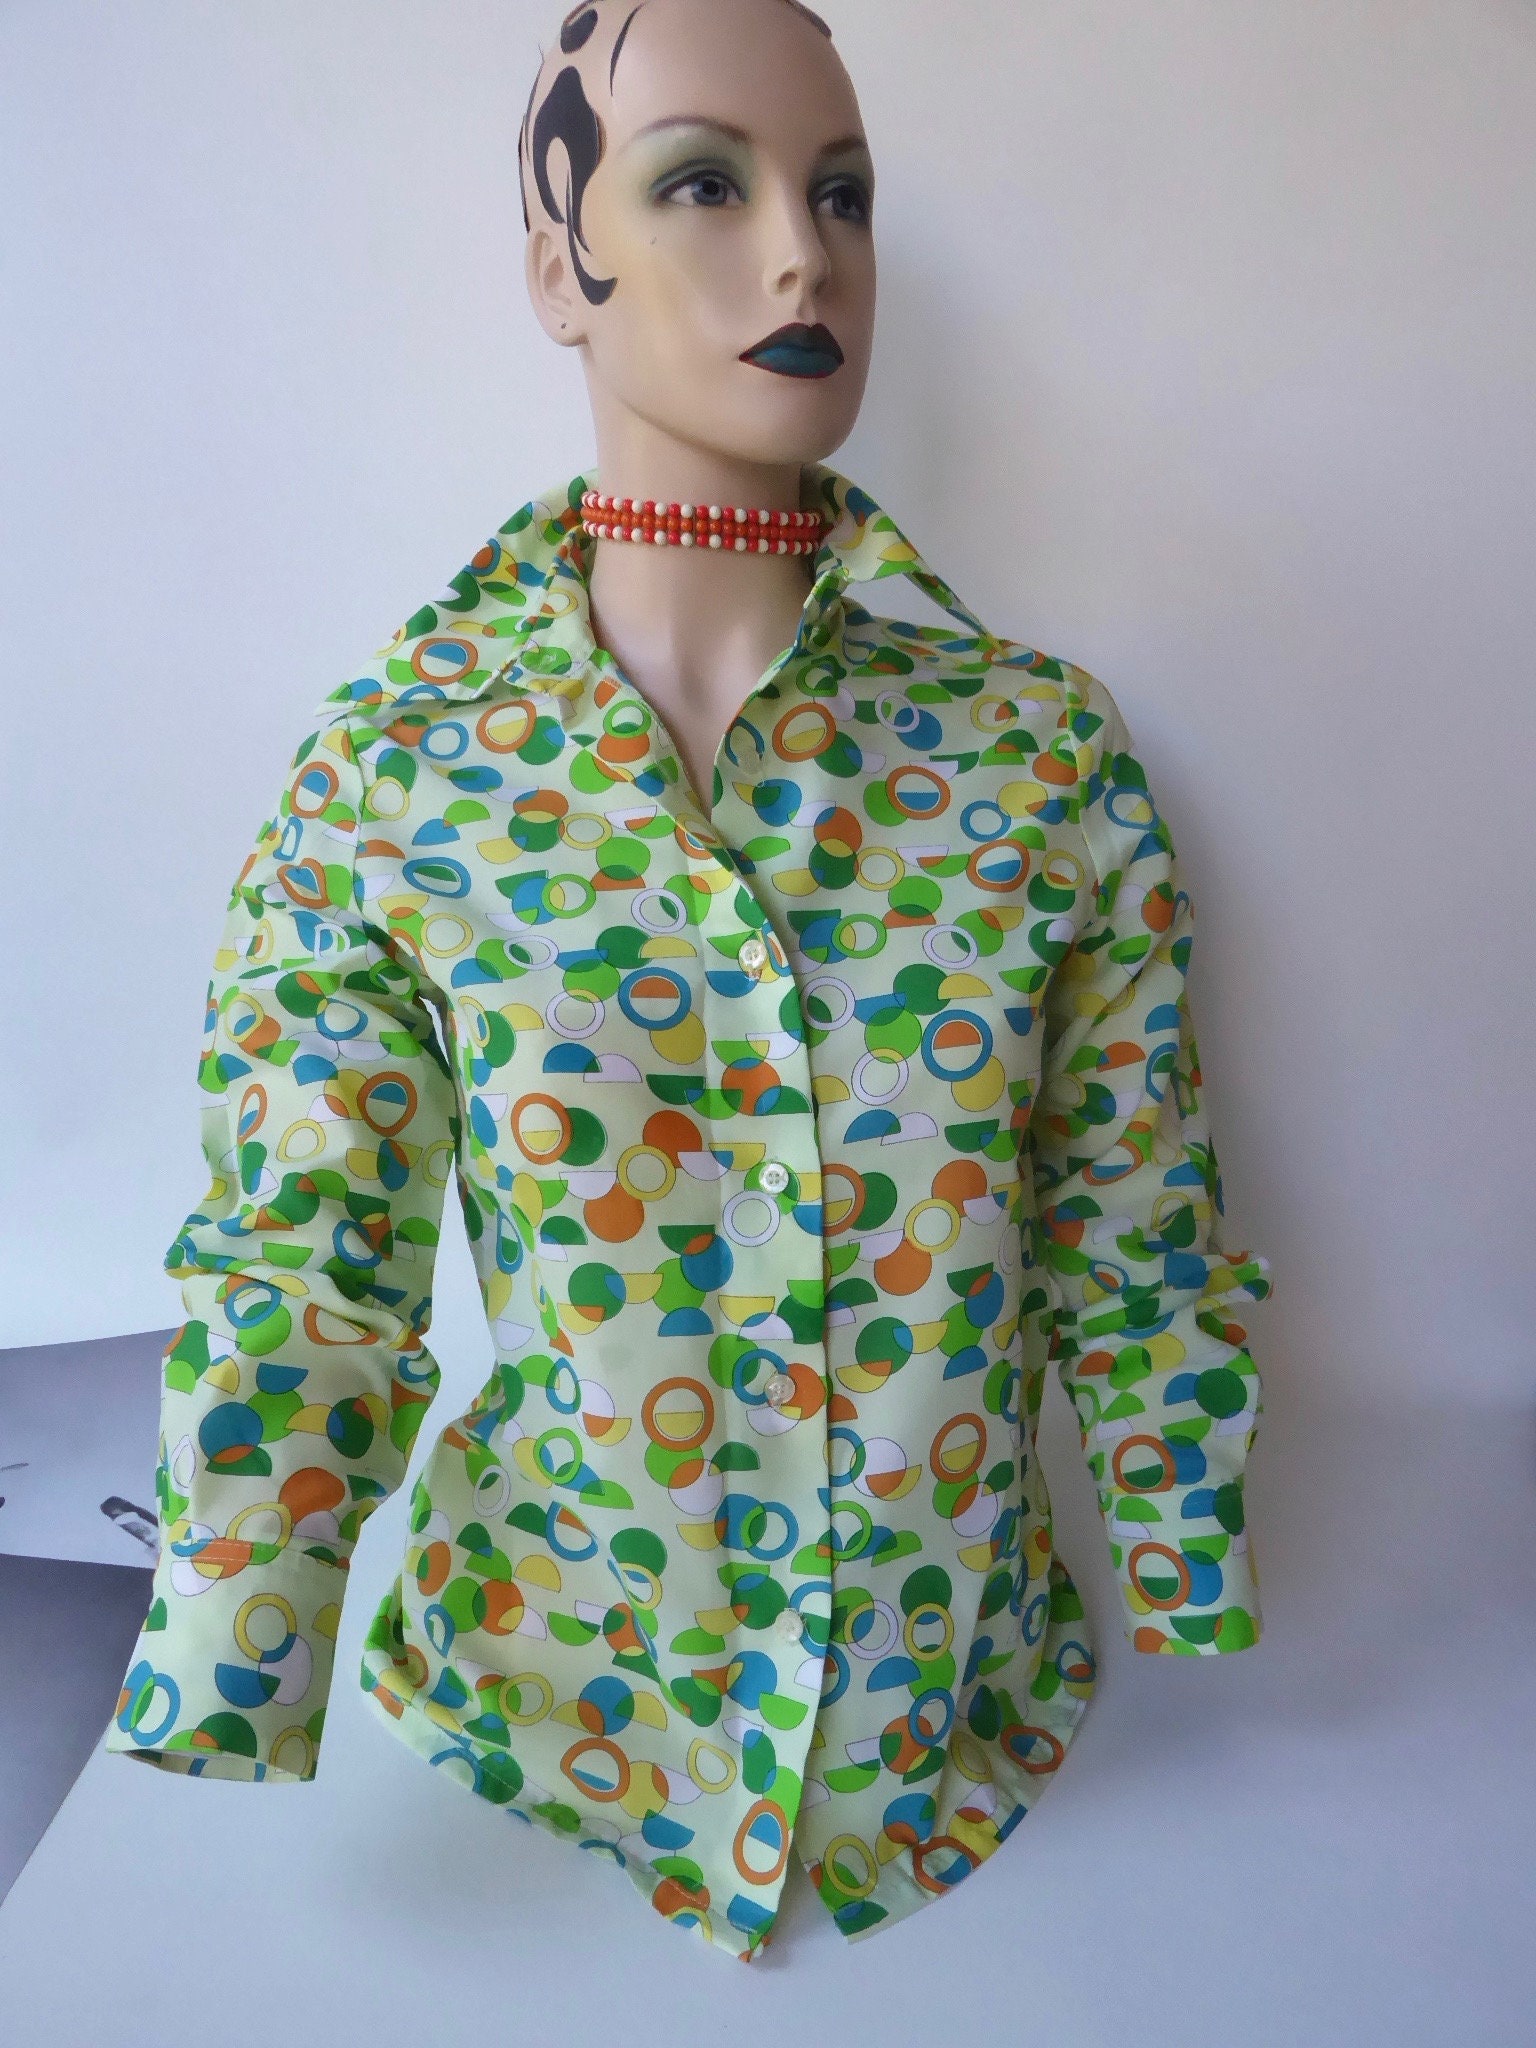 voor grens toekomst Miss Sun Valley pop art blouse 1960 . Long sleeves. Orange, green and  yellow and blue. Modern art. Hop art. Morris Watkin.Space age.